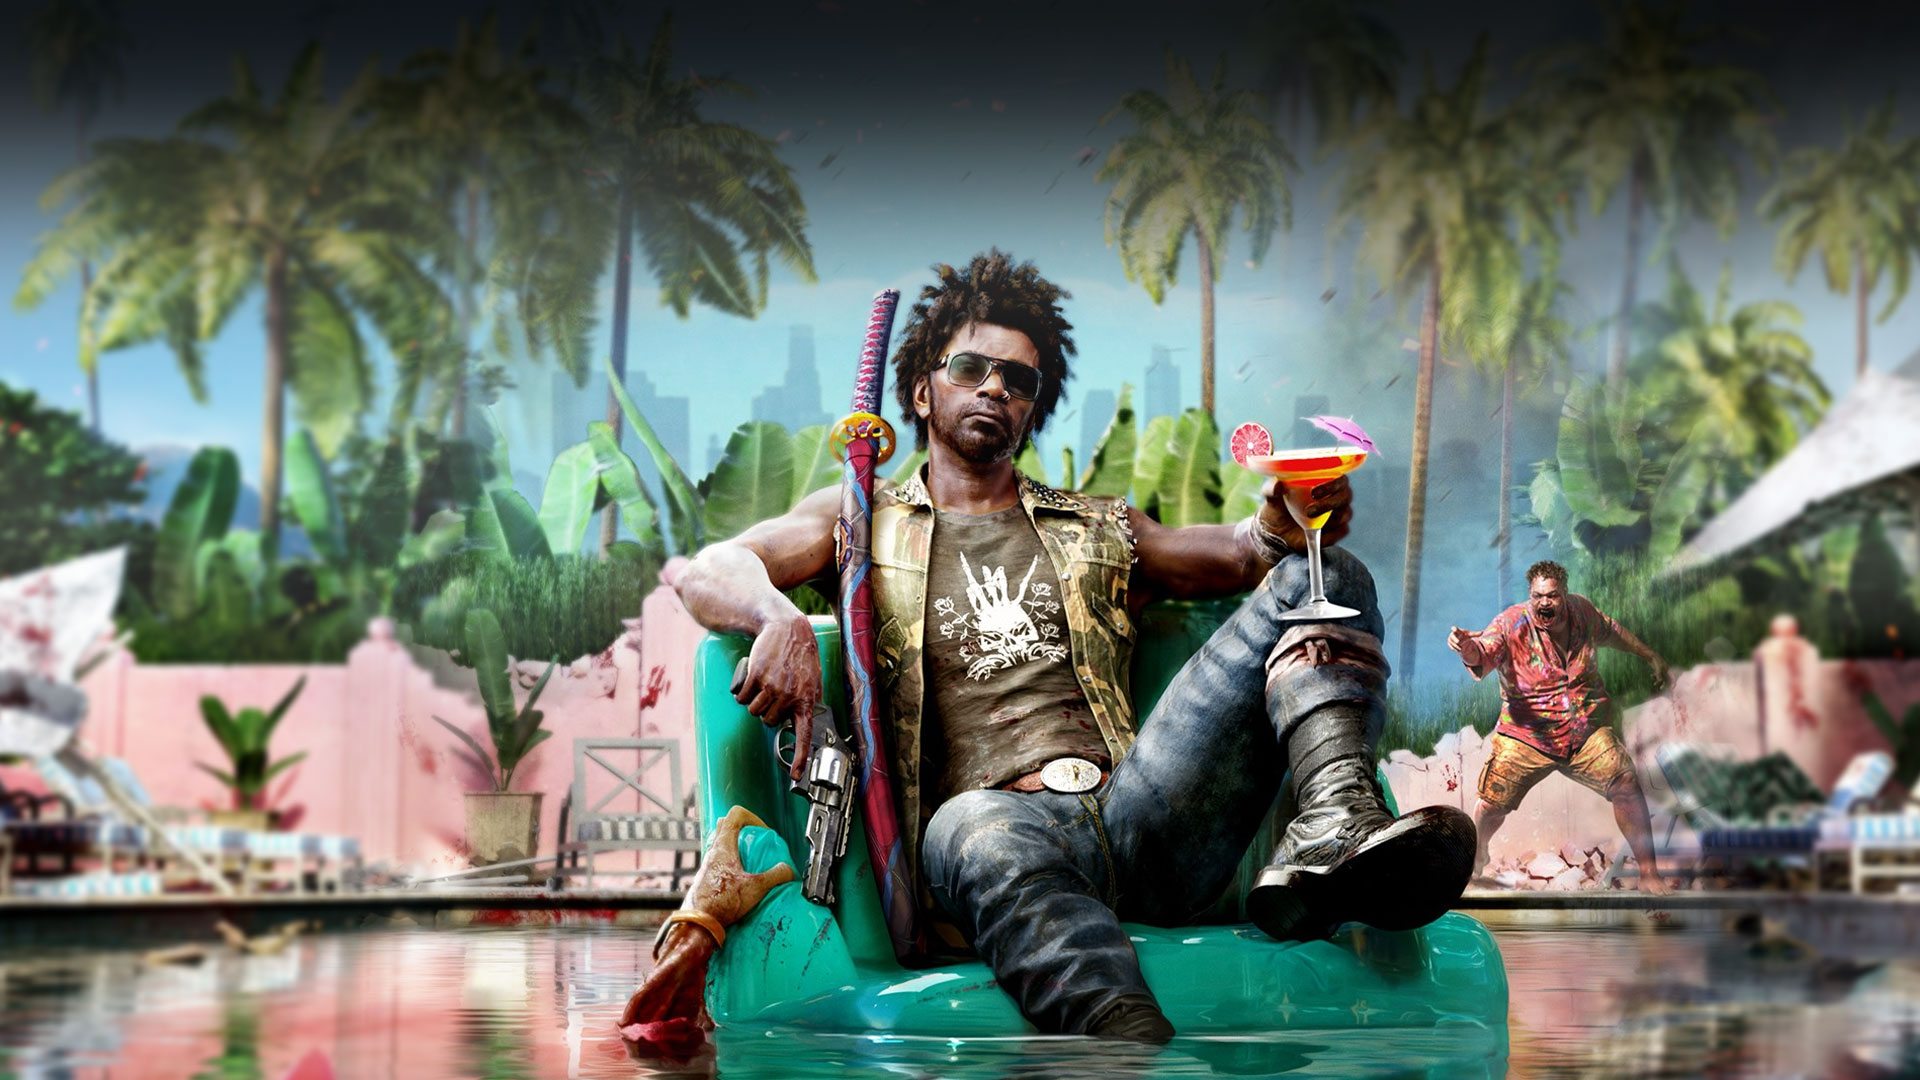 Hlavná postava sedí so zbraňami a martini na nafukovacom kresle v bazéne, zombie za ním naňho ukazuje a z bazéna sa za kreslom naťahuje ruka.